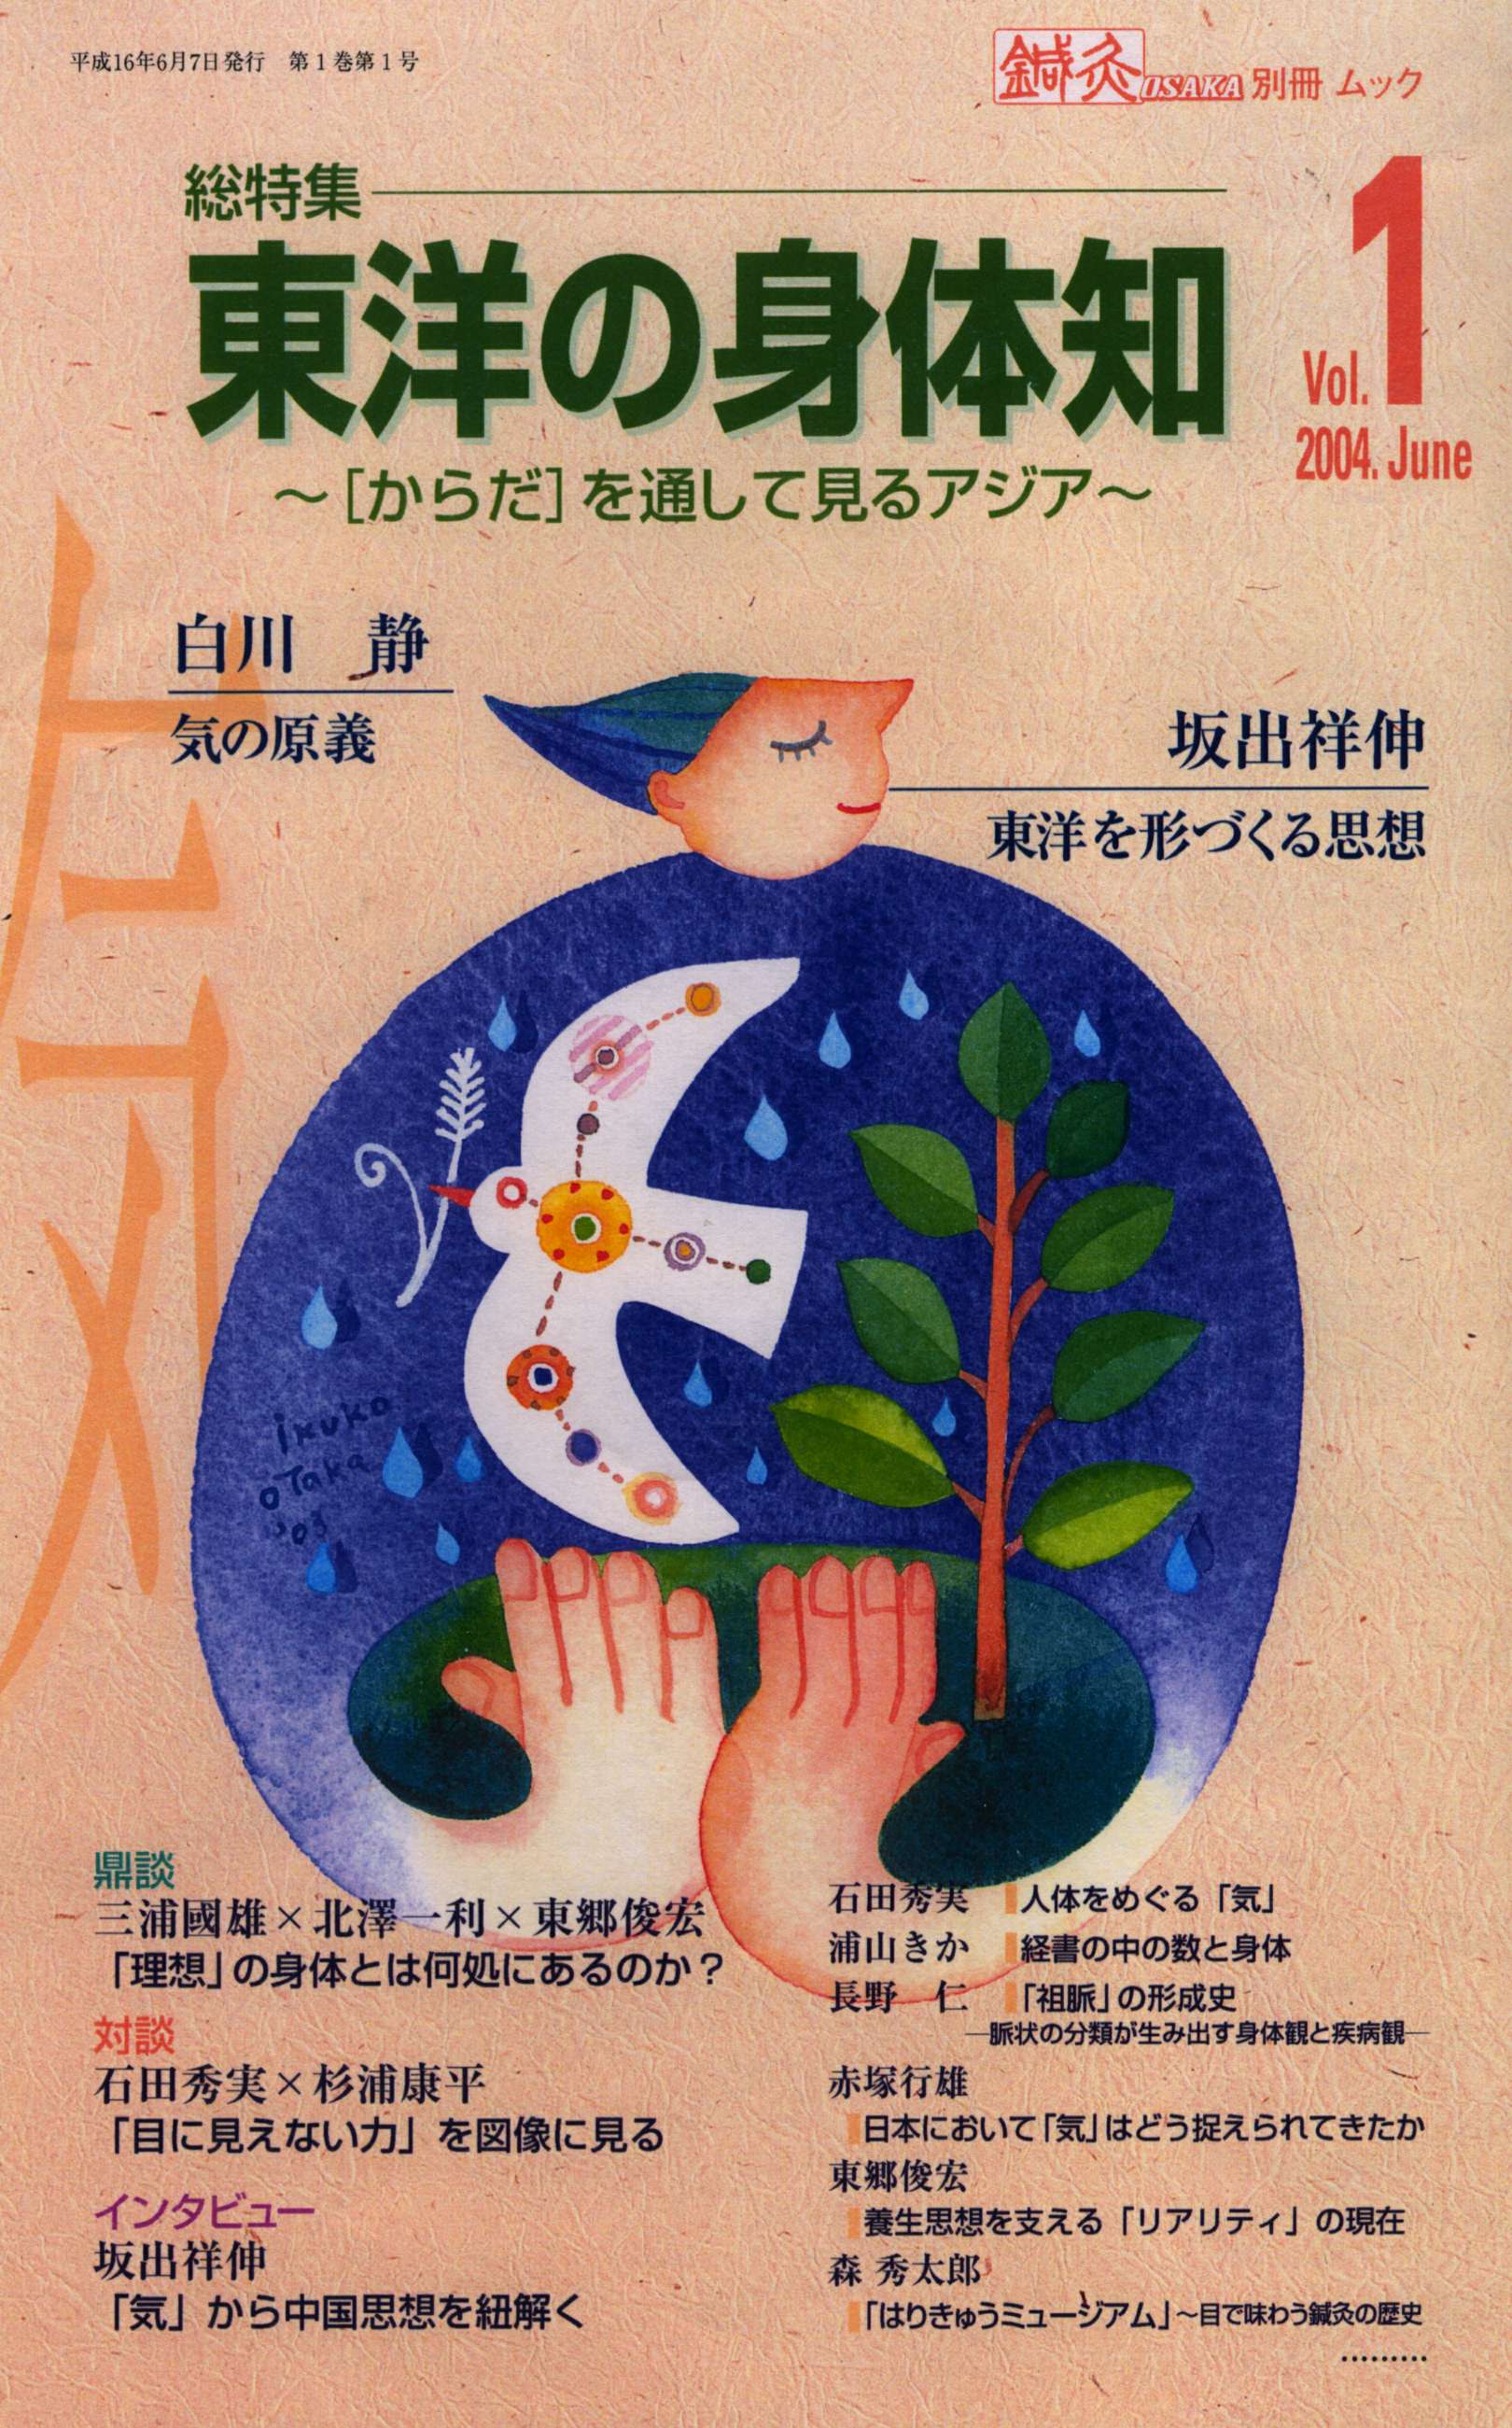 森ノ宮医療学園出版部　鍼灸OSAKA別冊ムックVol.1総特集東洋の身体知-からだを通して見るアジア-　–